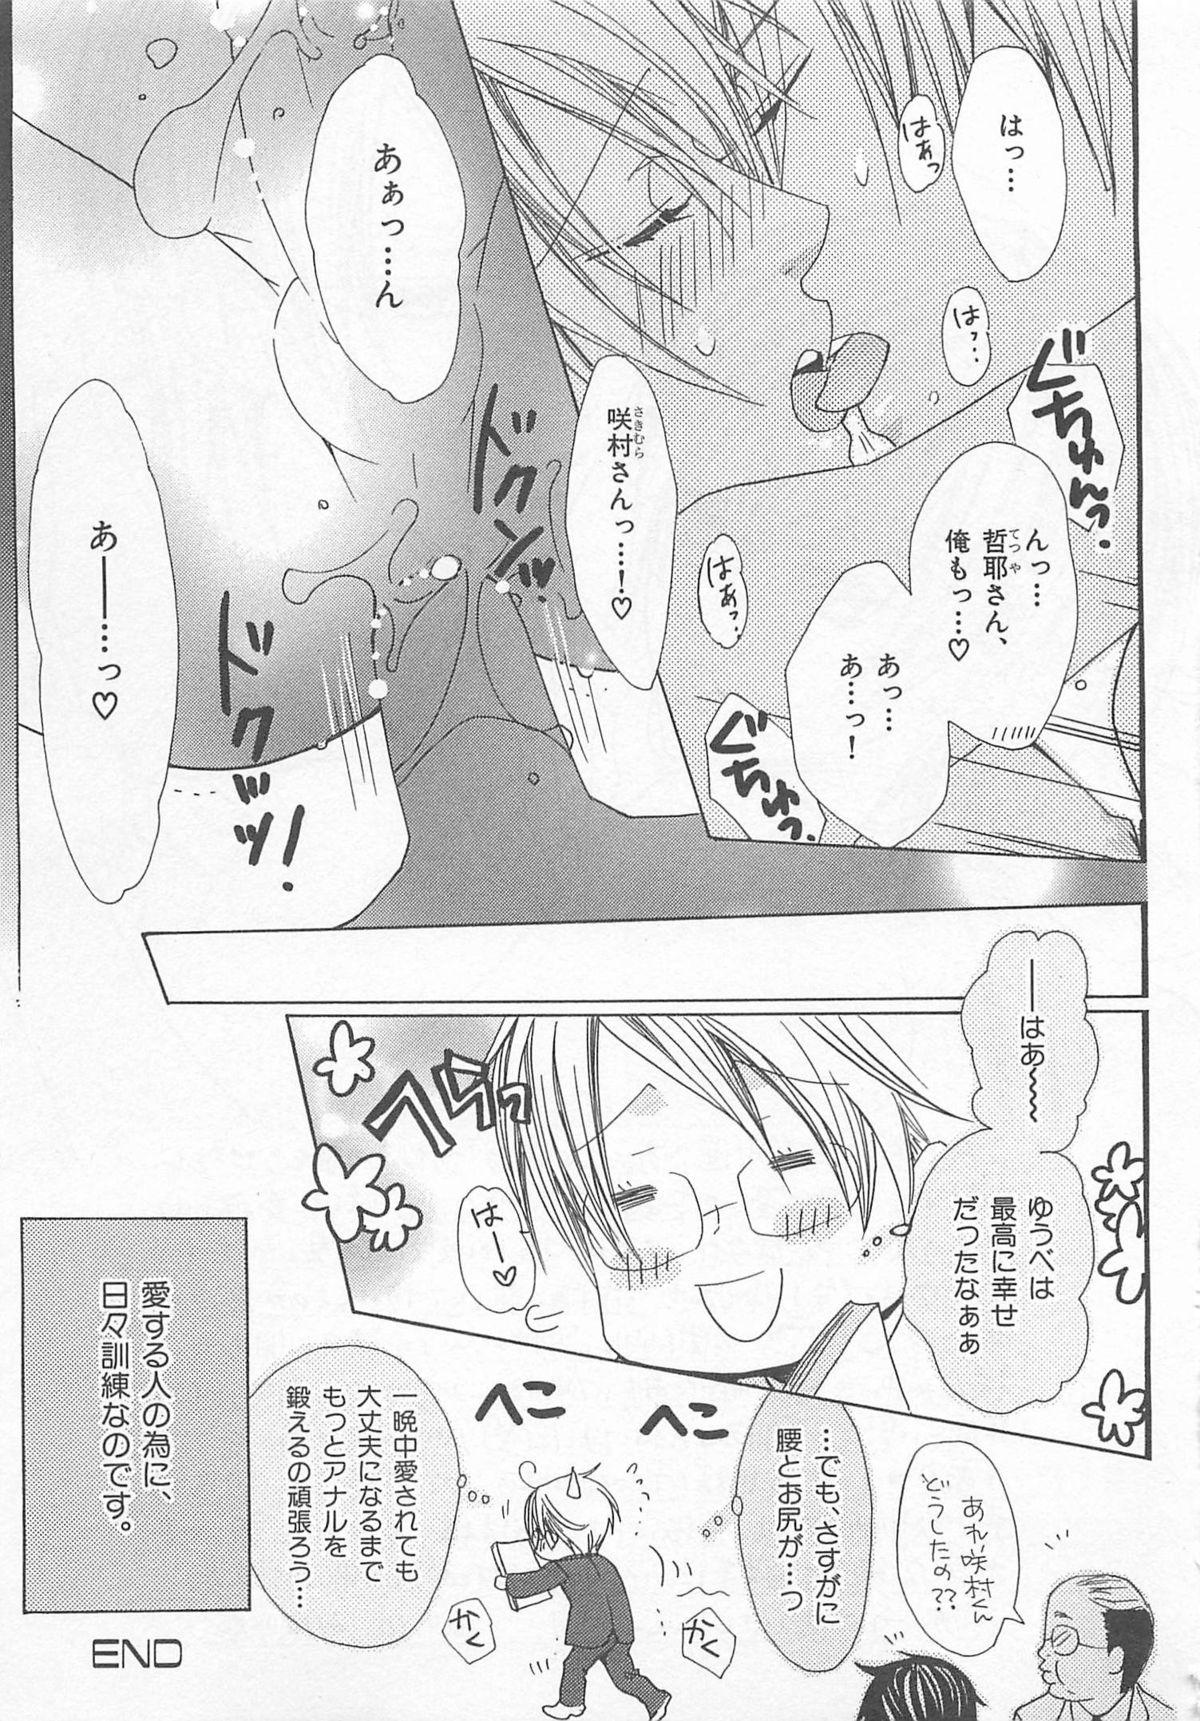 Rubbing Anata no Tsubomi wo Osewa Shimasu! Ass Fucking - Page 179